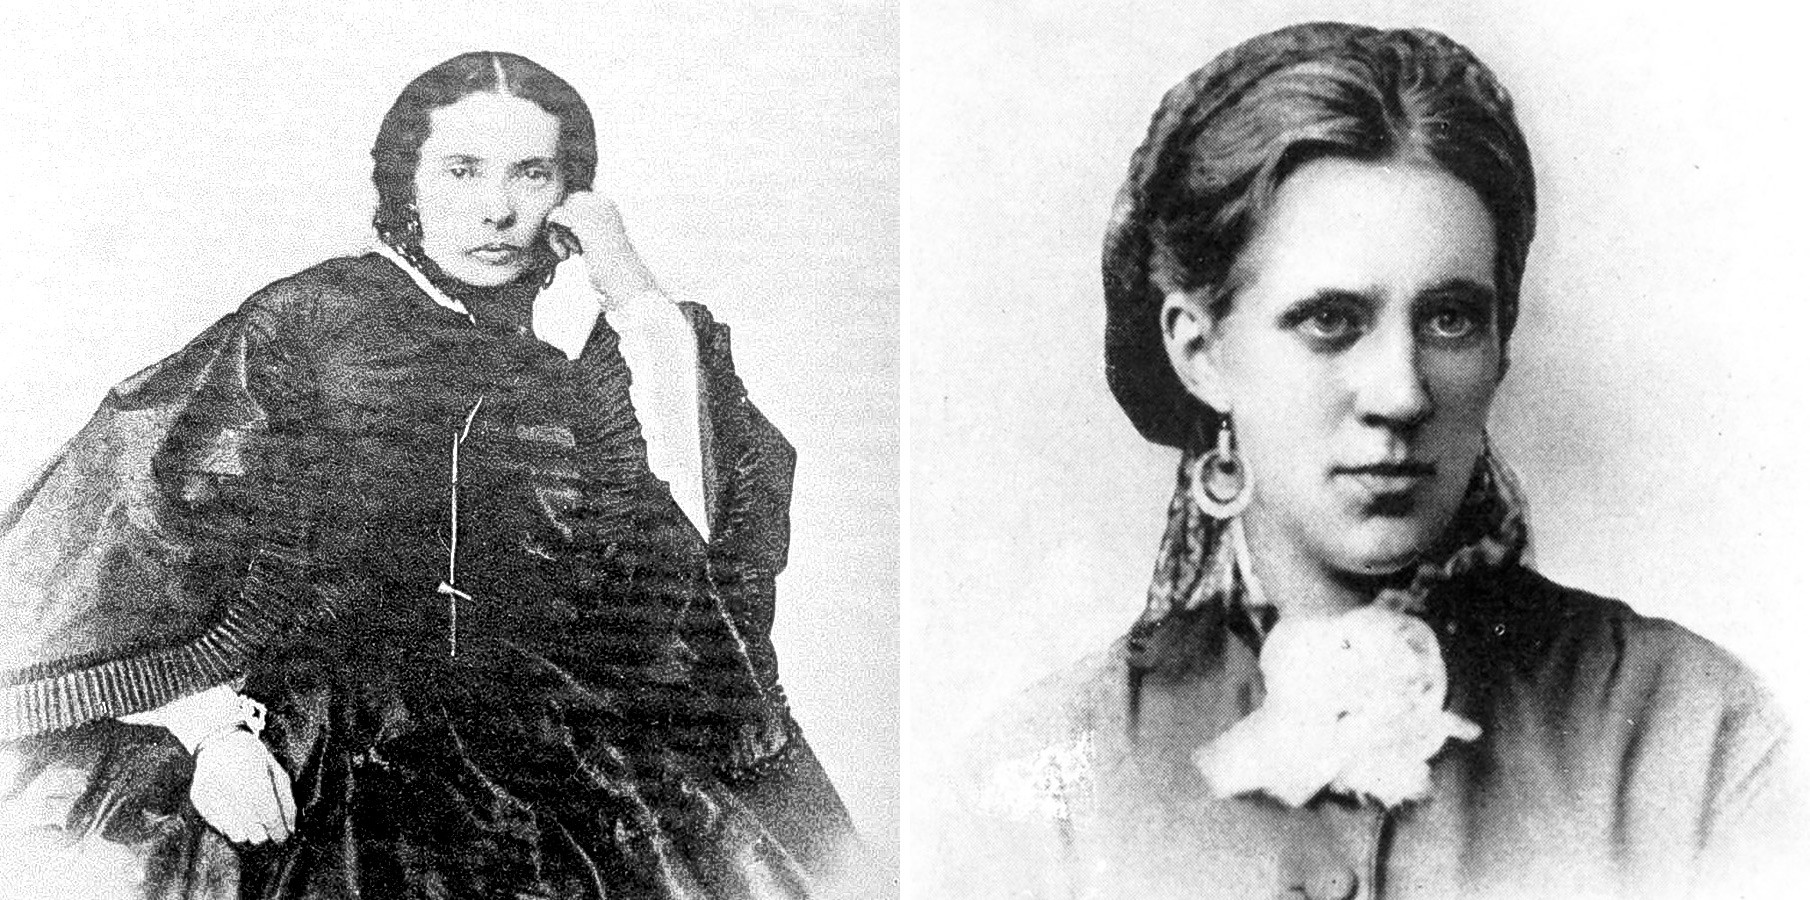 De la izquierda a la derecha: María Isáieva (Konstant), Anna Dostoiévskaia (Snítkina).